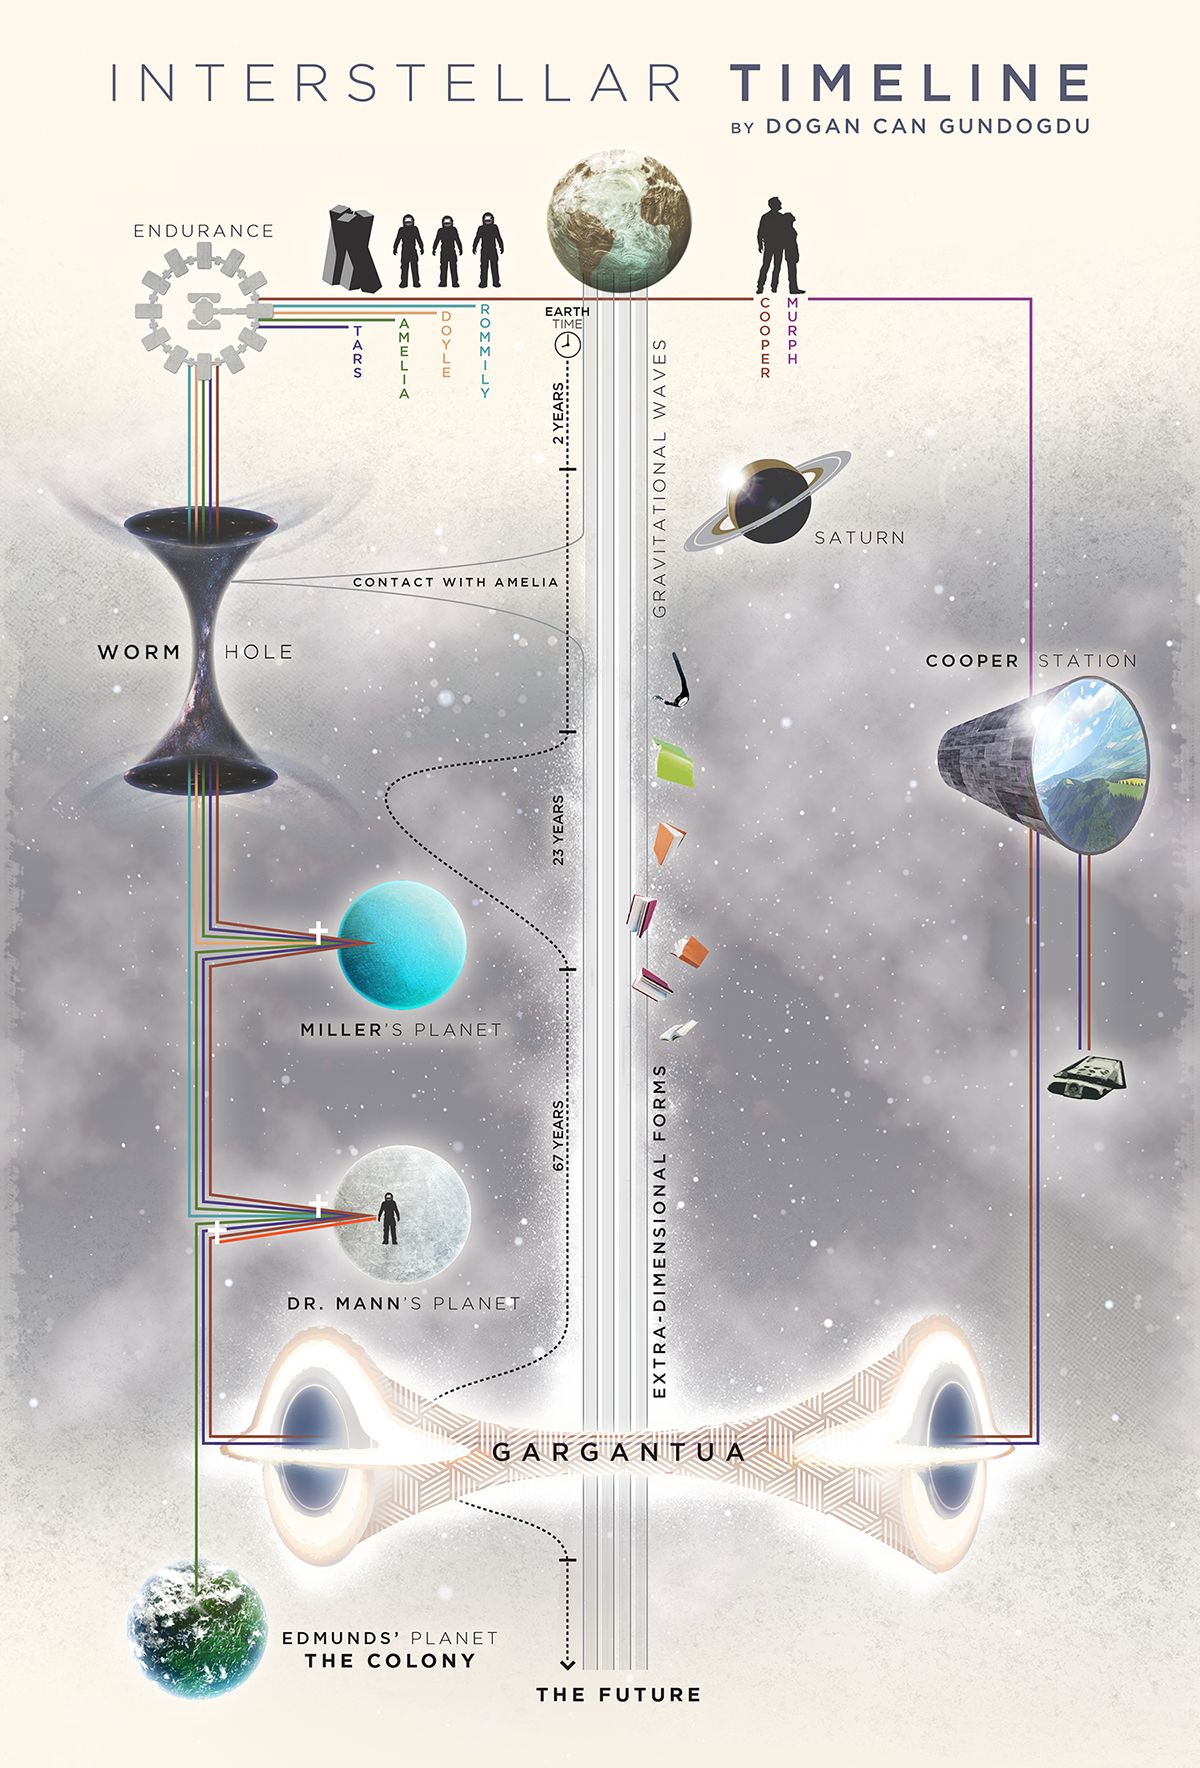 interstellar timeline infographic poster